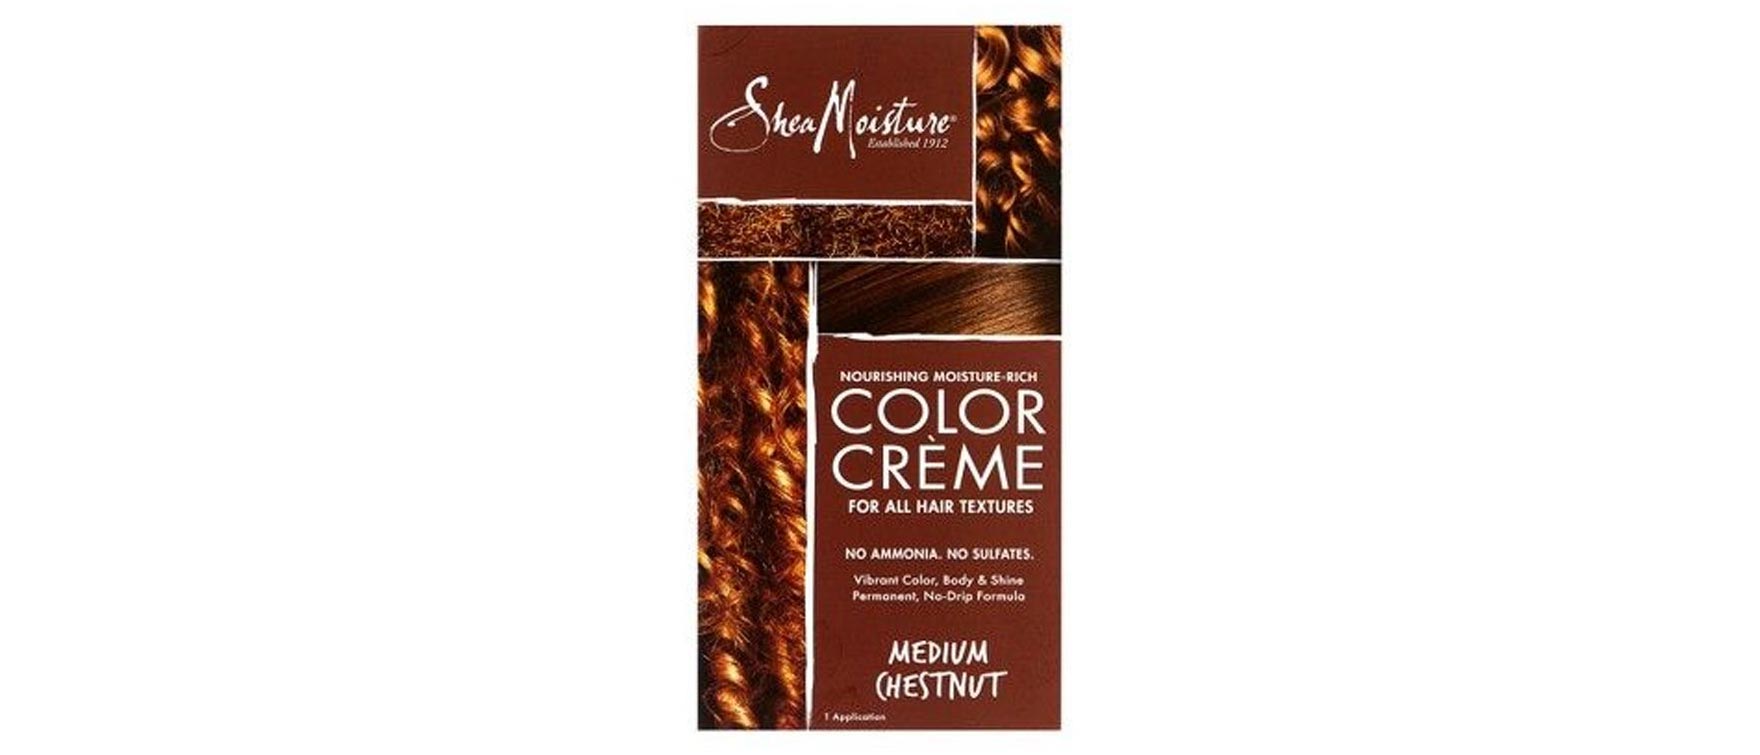 Shea’s Moisture Nourishing Hair Color Kit